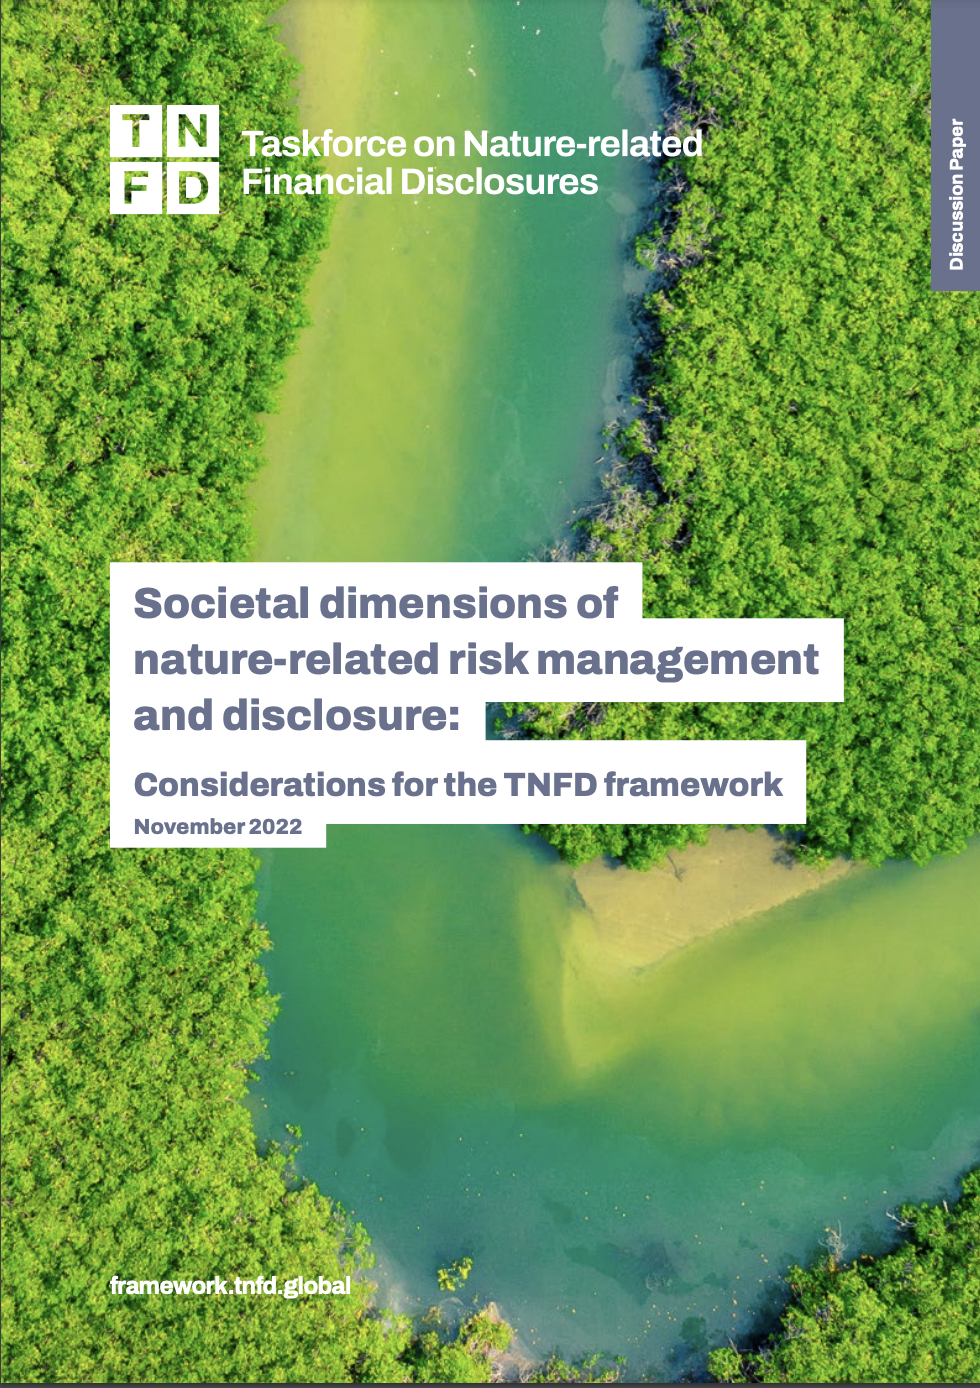 Dimensiones sociales de la gestión y divulgación de riesgos relacionados con la naturaleza: Consideraciones para el marco TNFD